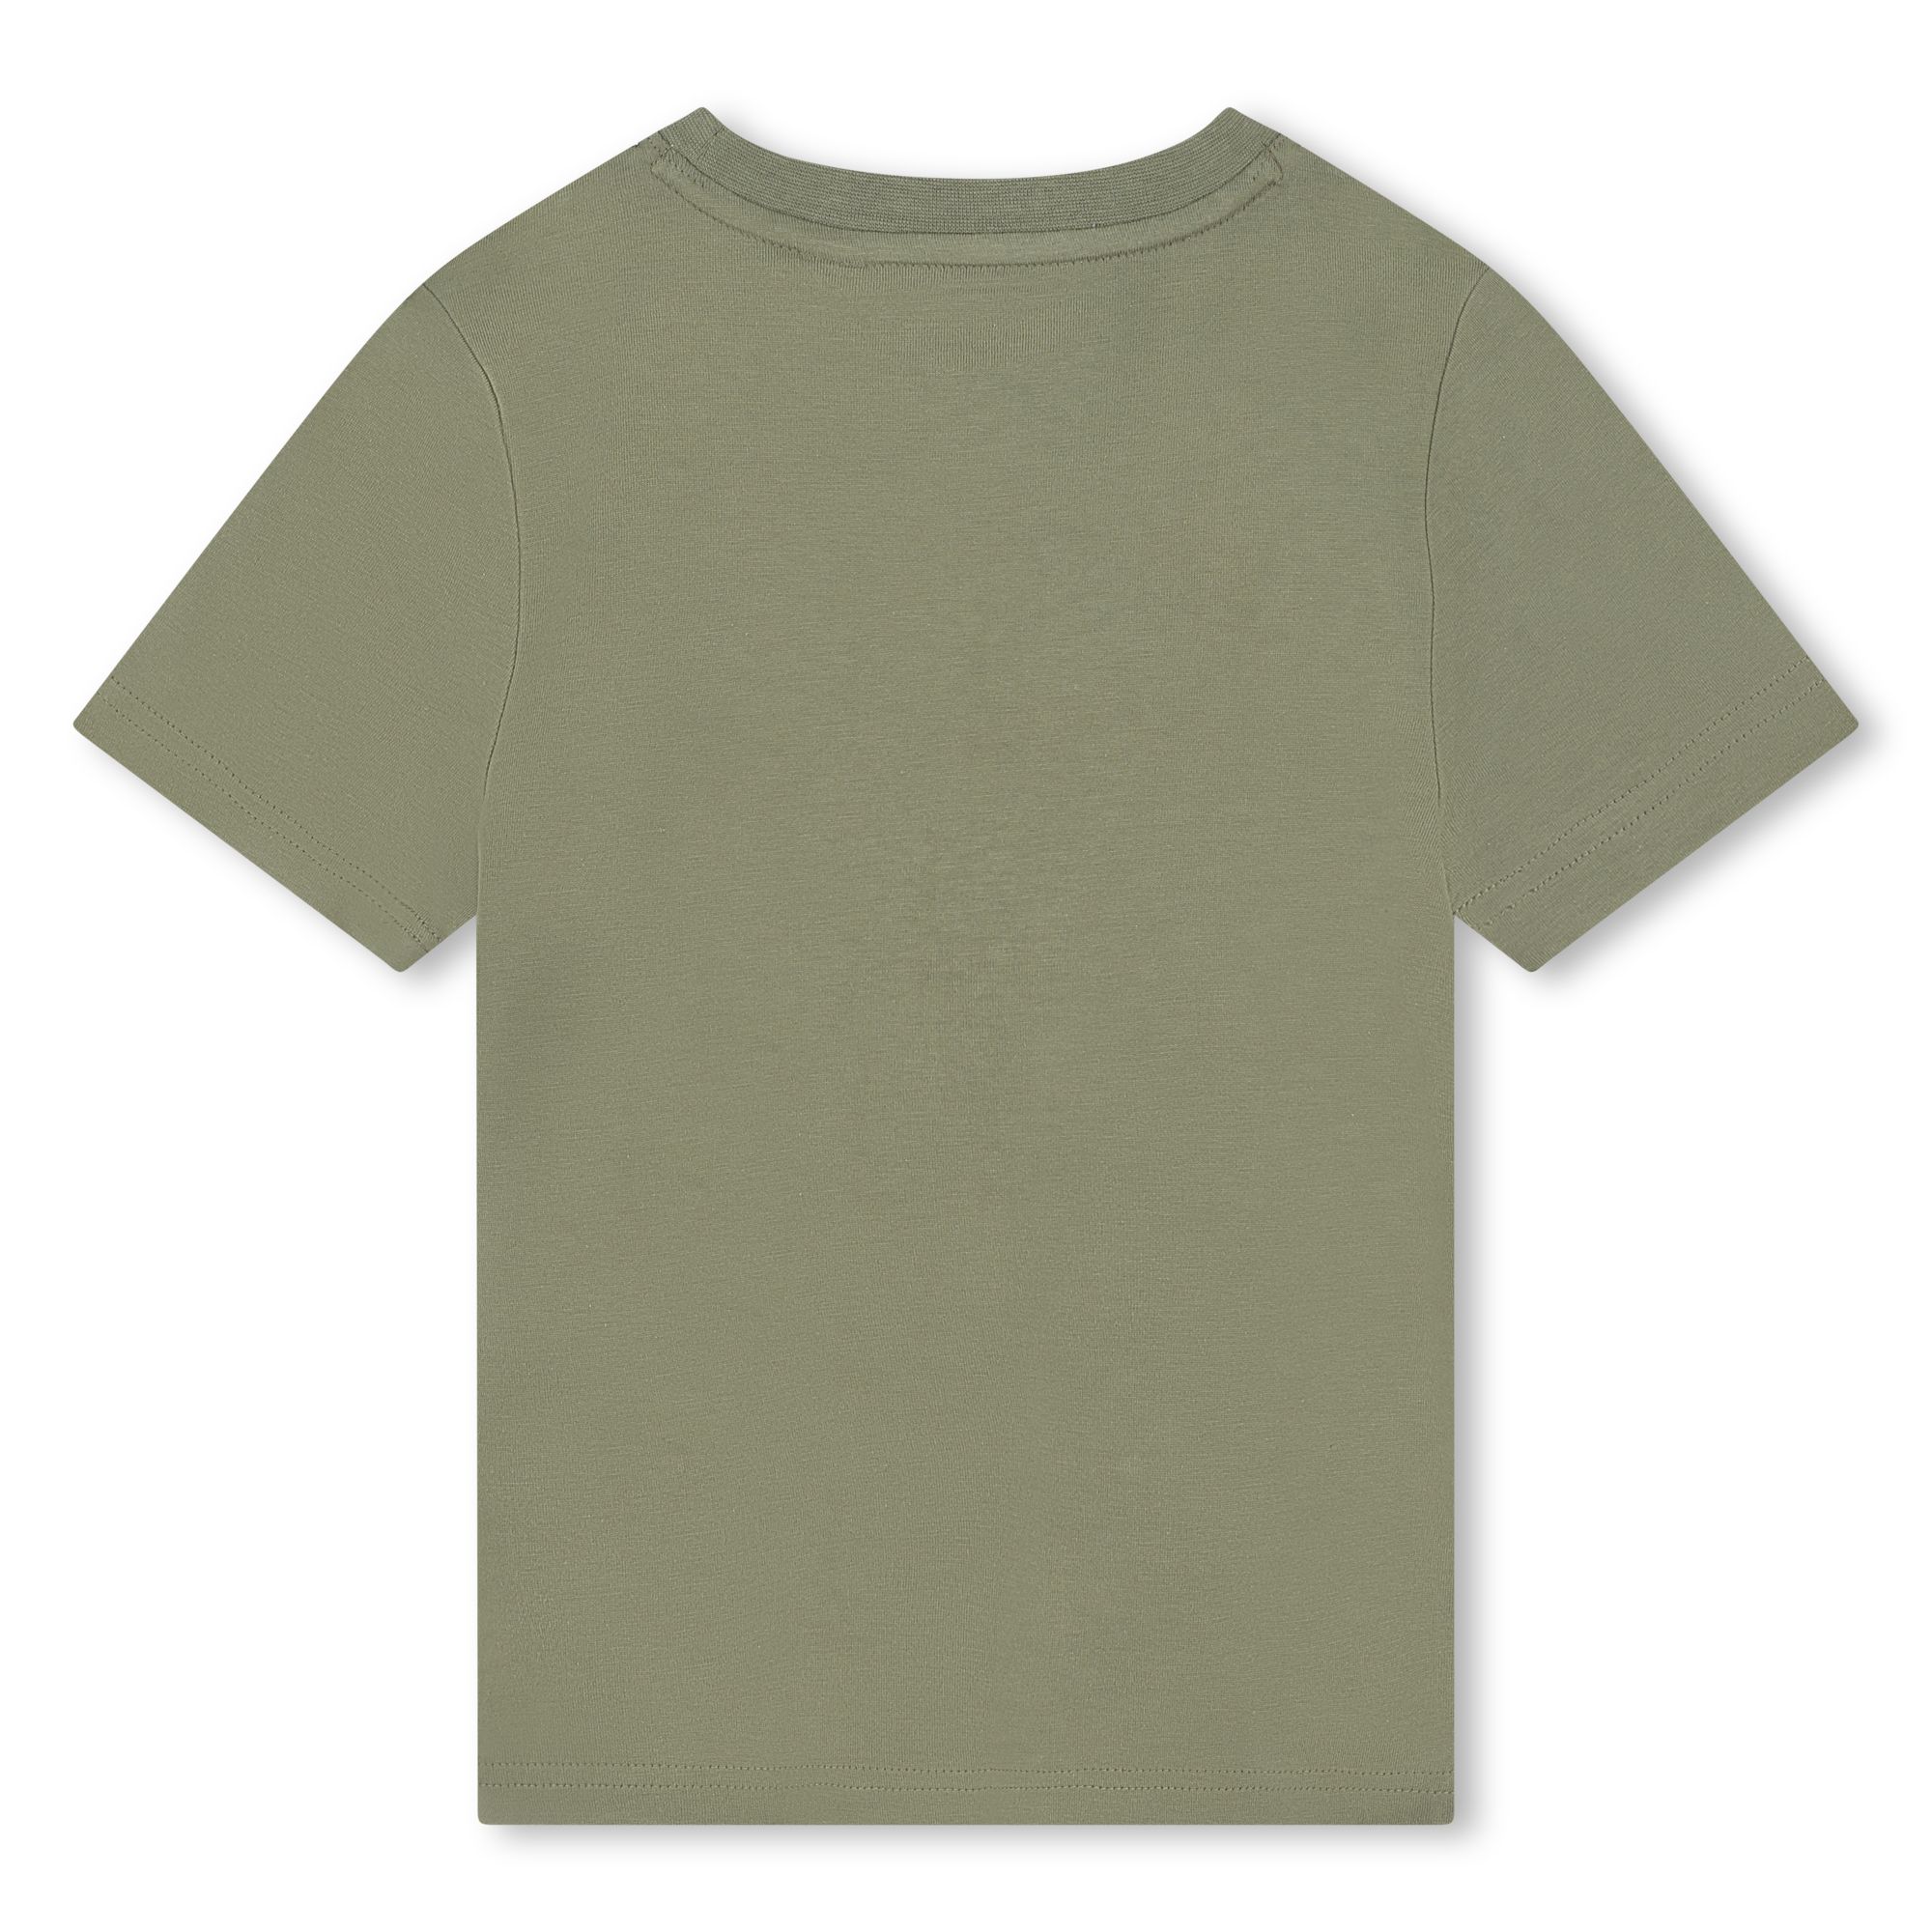 Kurzarm-T-Shirt aus Baumwolle TIMBERLAND Für JUNGE